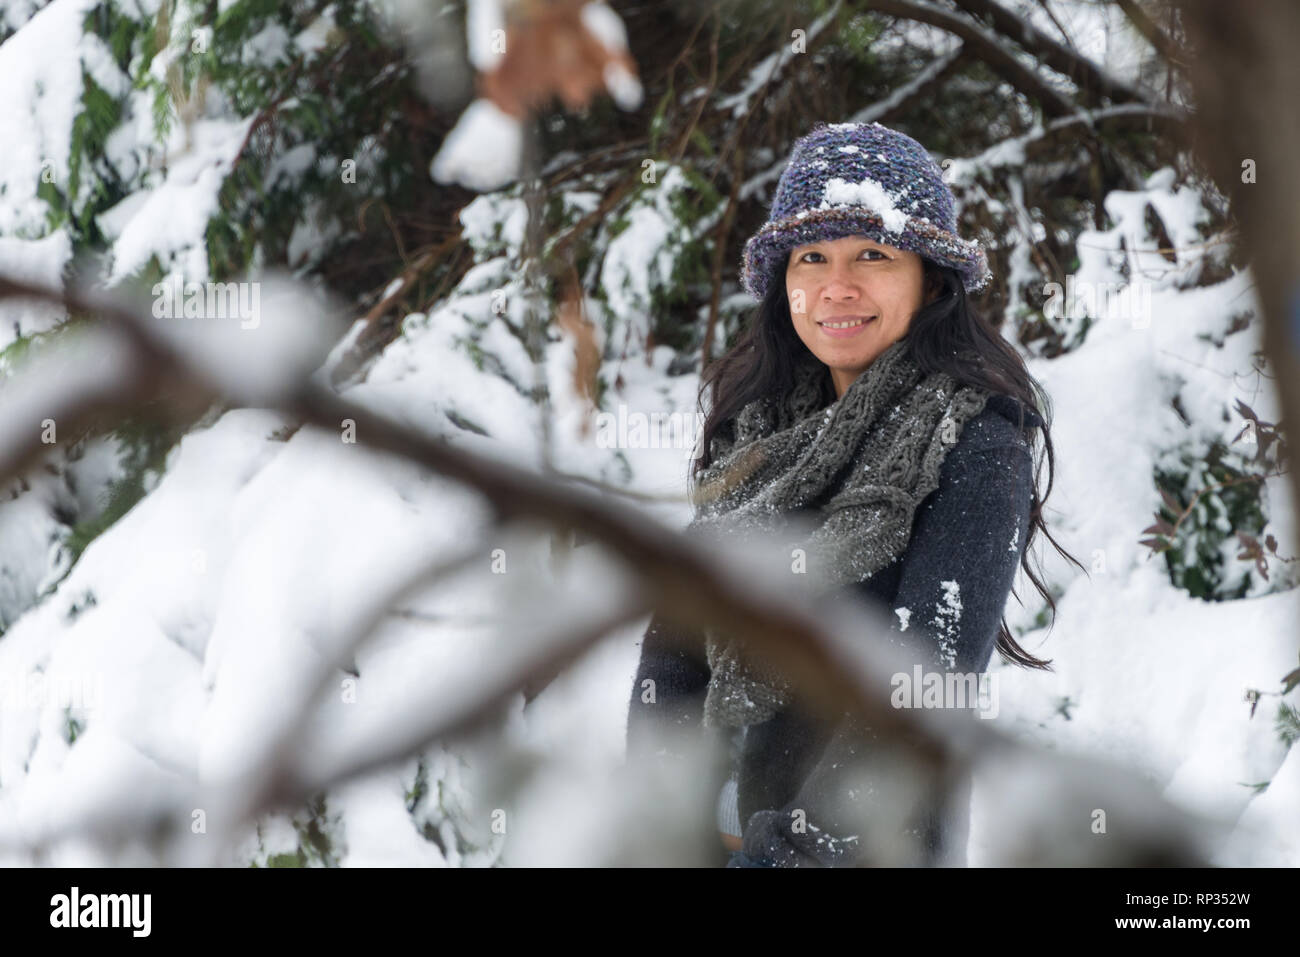 Mujer joven con estilo vistiendo ropa de abrigo tocando la nieve y